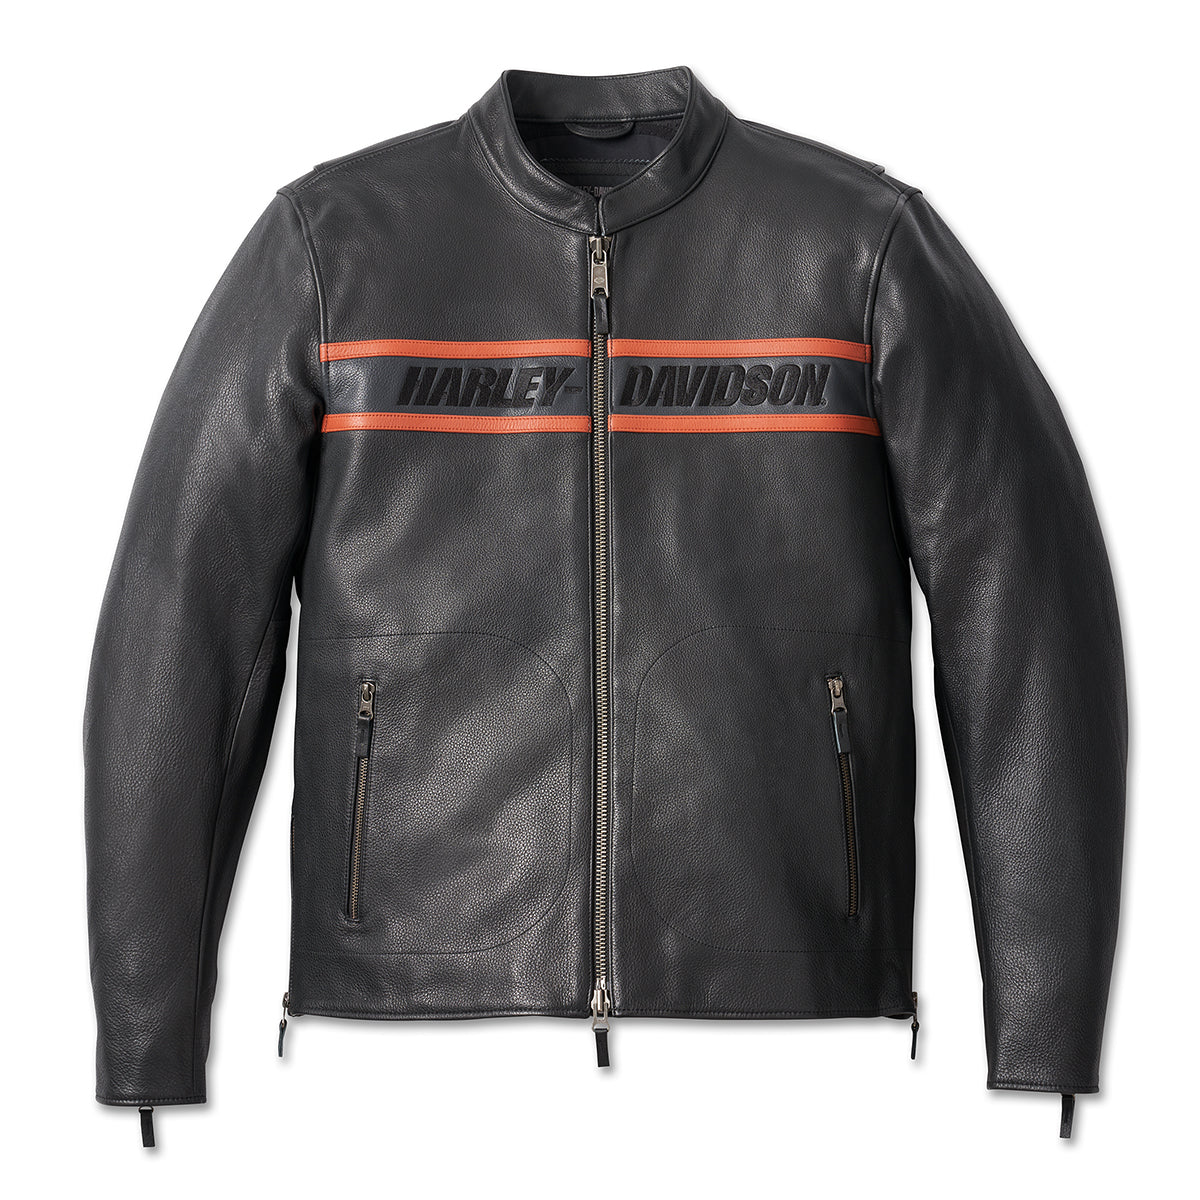 Harley-Davidson Men's Victory Lane II Leather Jacket - Black